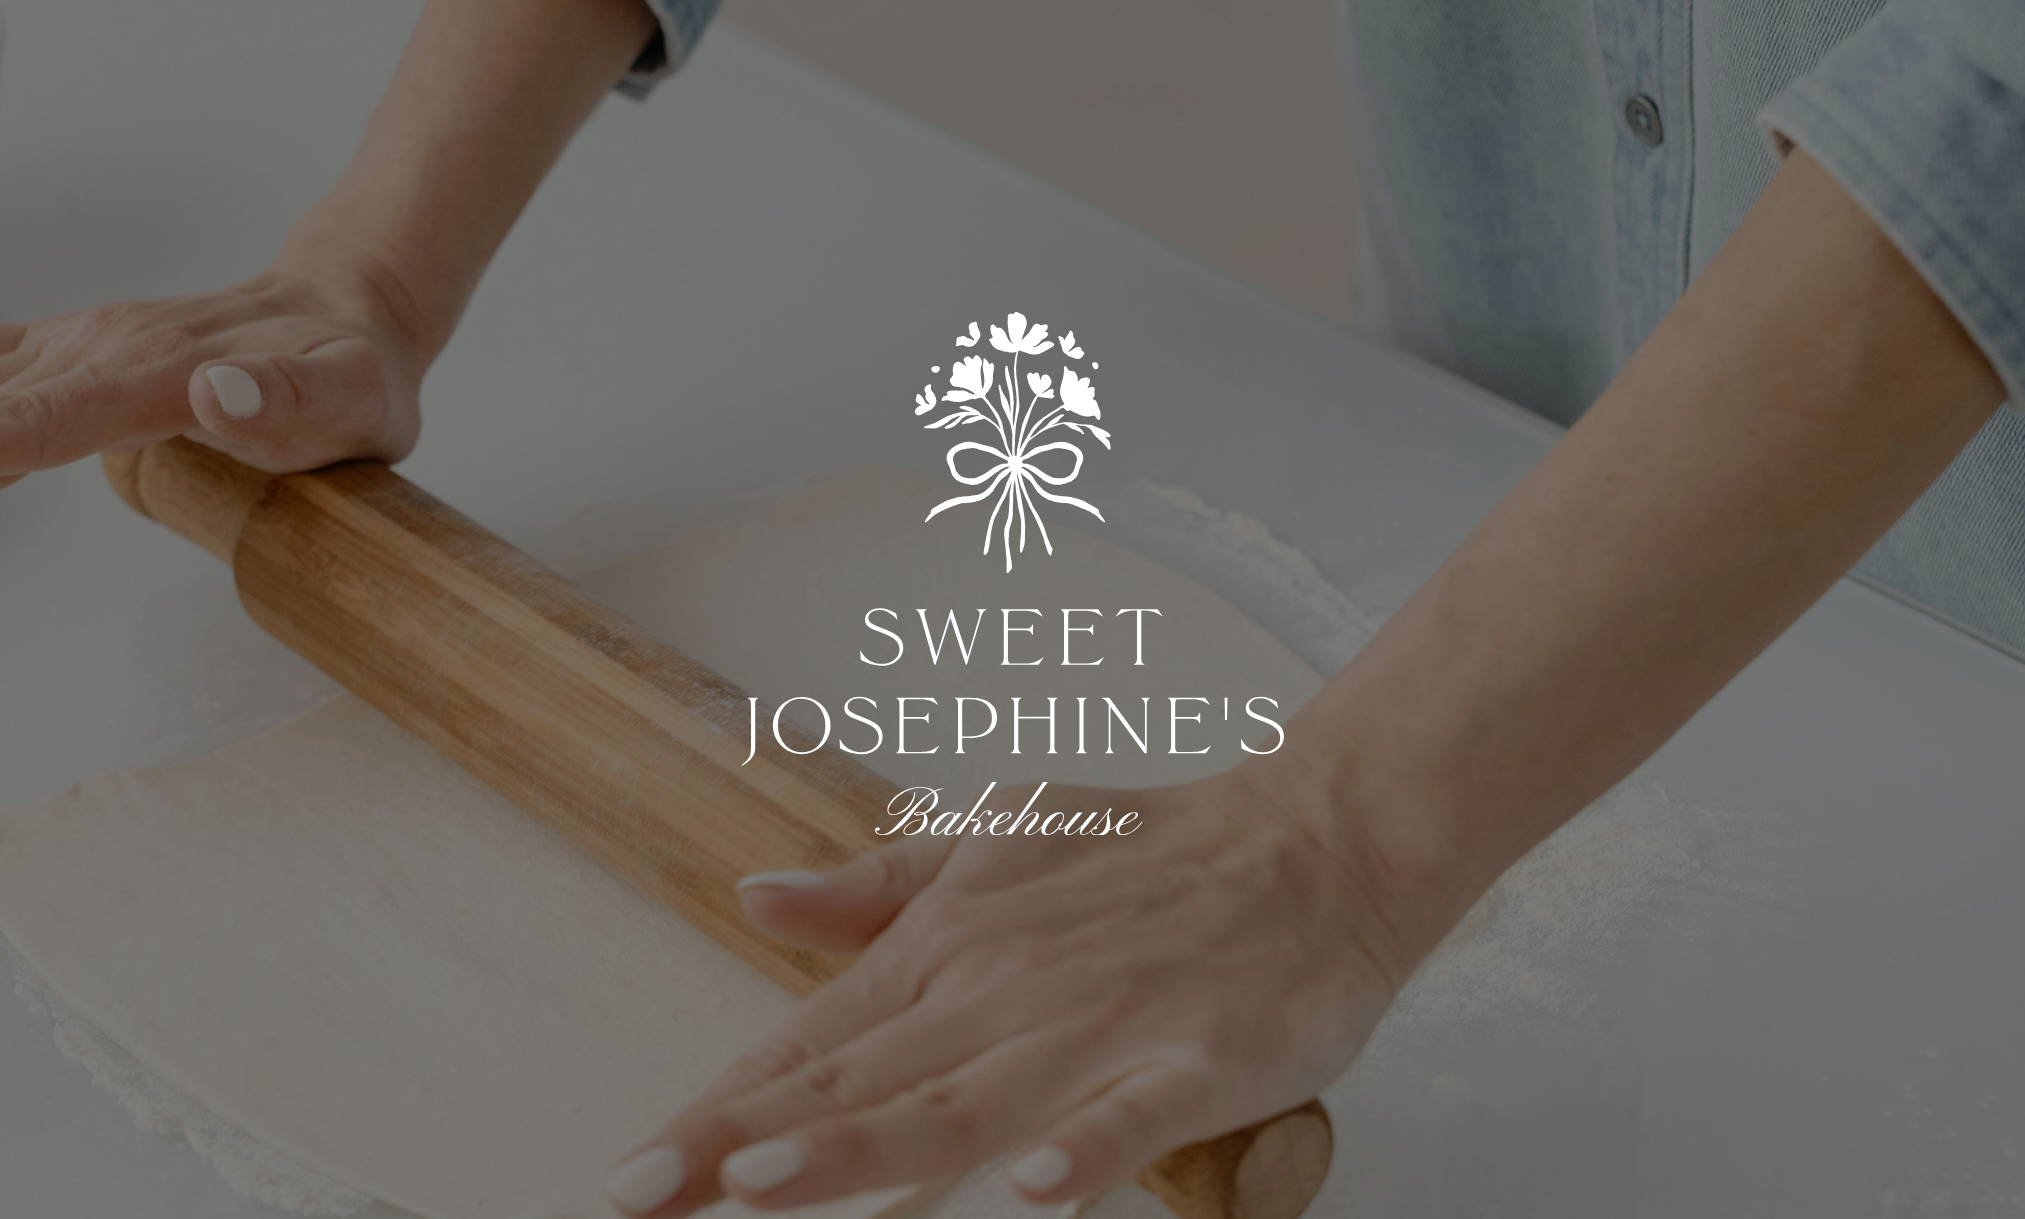 Semi Custom Brand - Charming Feminine Floral Logo Design for Sweet Josephine's Bakehouse - by Sarah Ann Design